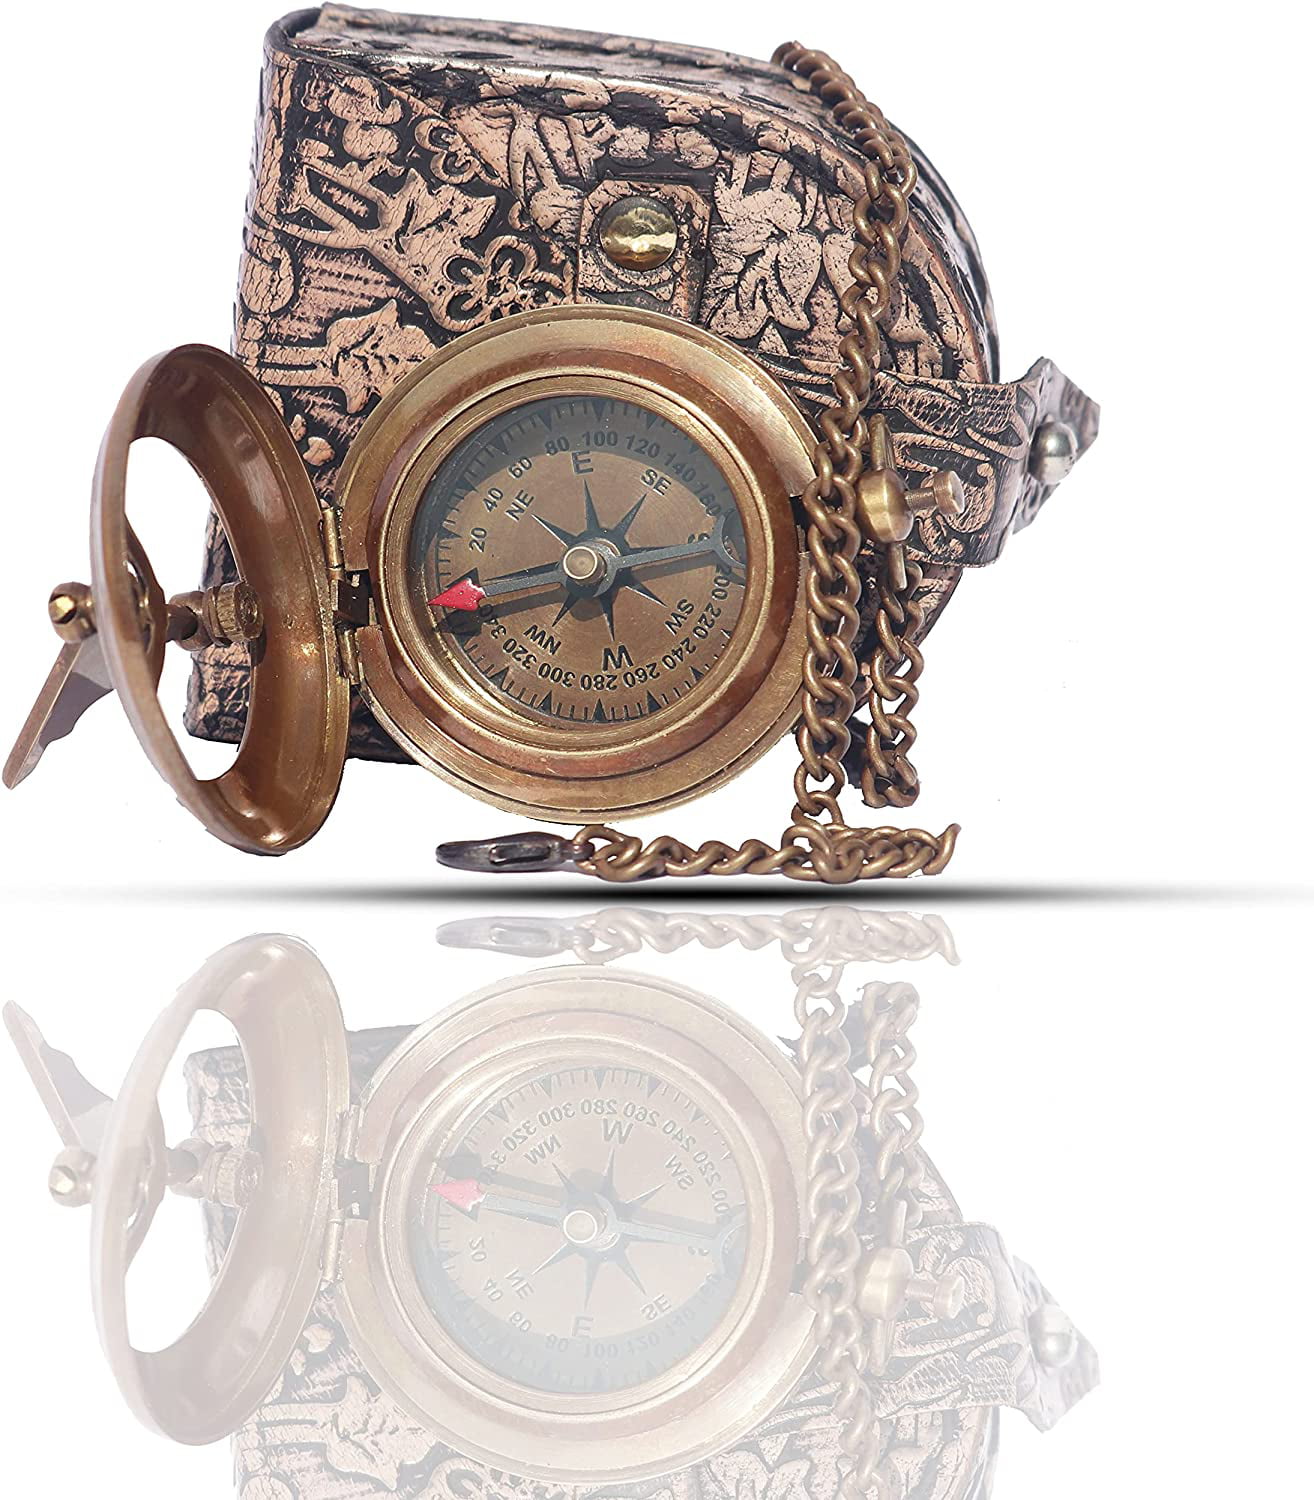 Gift Compass Nautical Hand-Made 3" Brass Working Navigational Sundial Compass